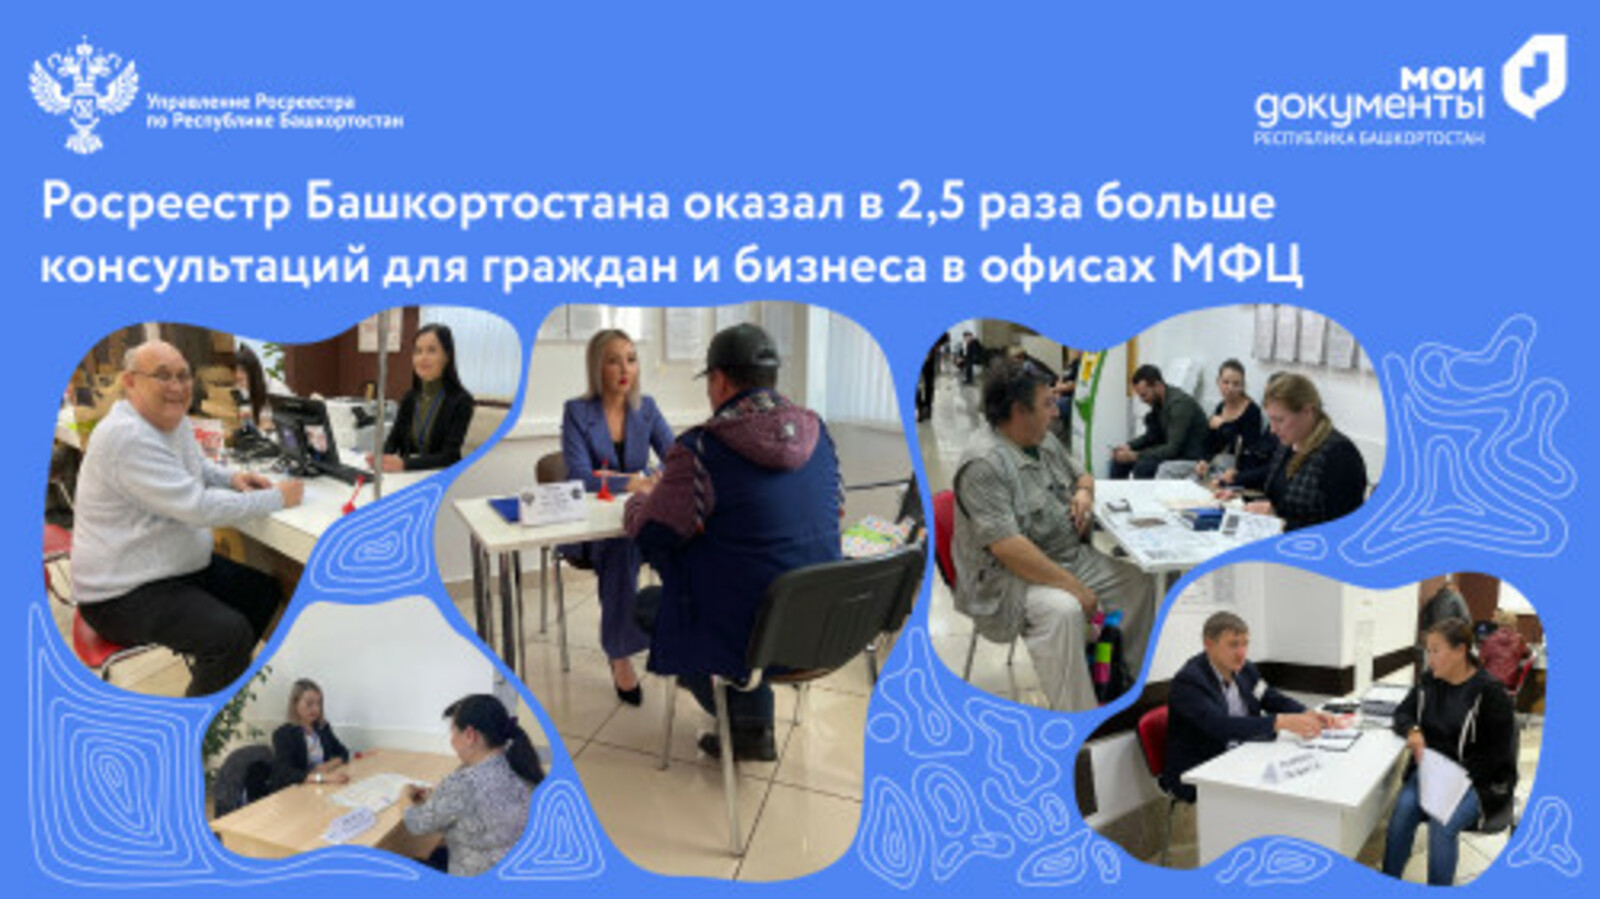 Росреестр Башкортостана оказал в 2,5 раза больше консультаций для граждан и бизнеса в офисах МФЦ